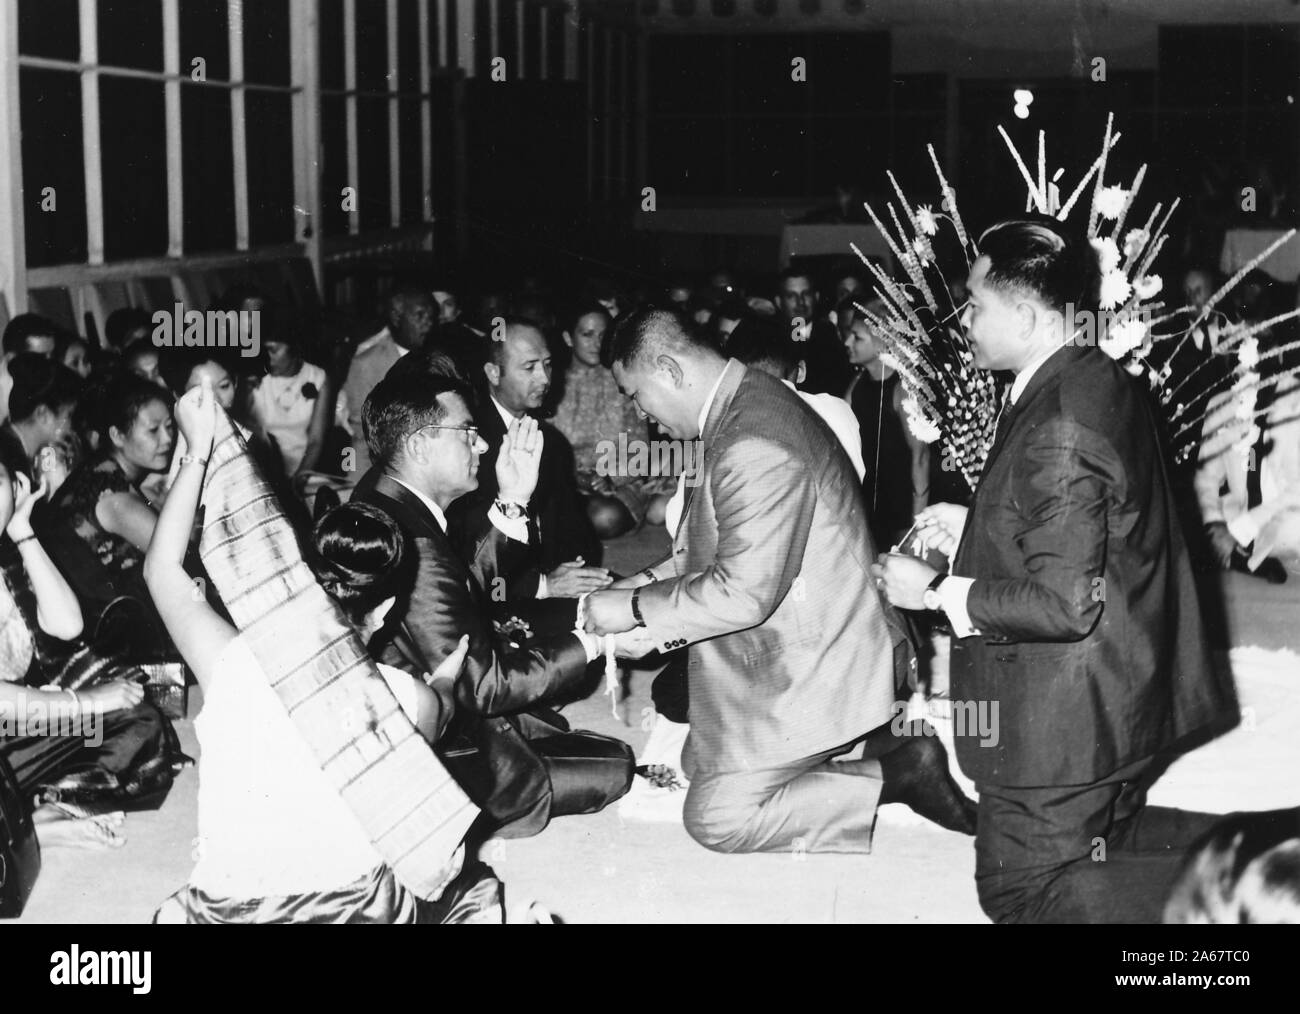 Un groupe d'hommes et de femmes habillés formellement s'assoit sur le sol, certains recevant des bracelets Sai Sin, lors d'une cérémonie Baci lors d'un événement commun pour l'armée américaine et l'armée royale thaïlandaise, photographié pendant la guerre du Vietnam, 1968. () Banque D'Images